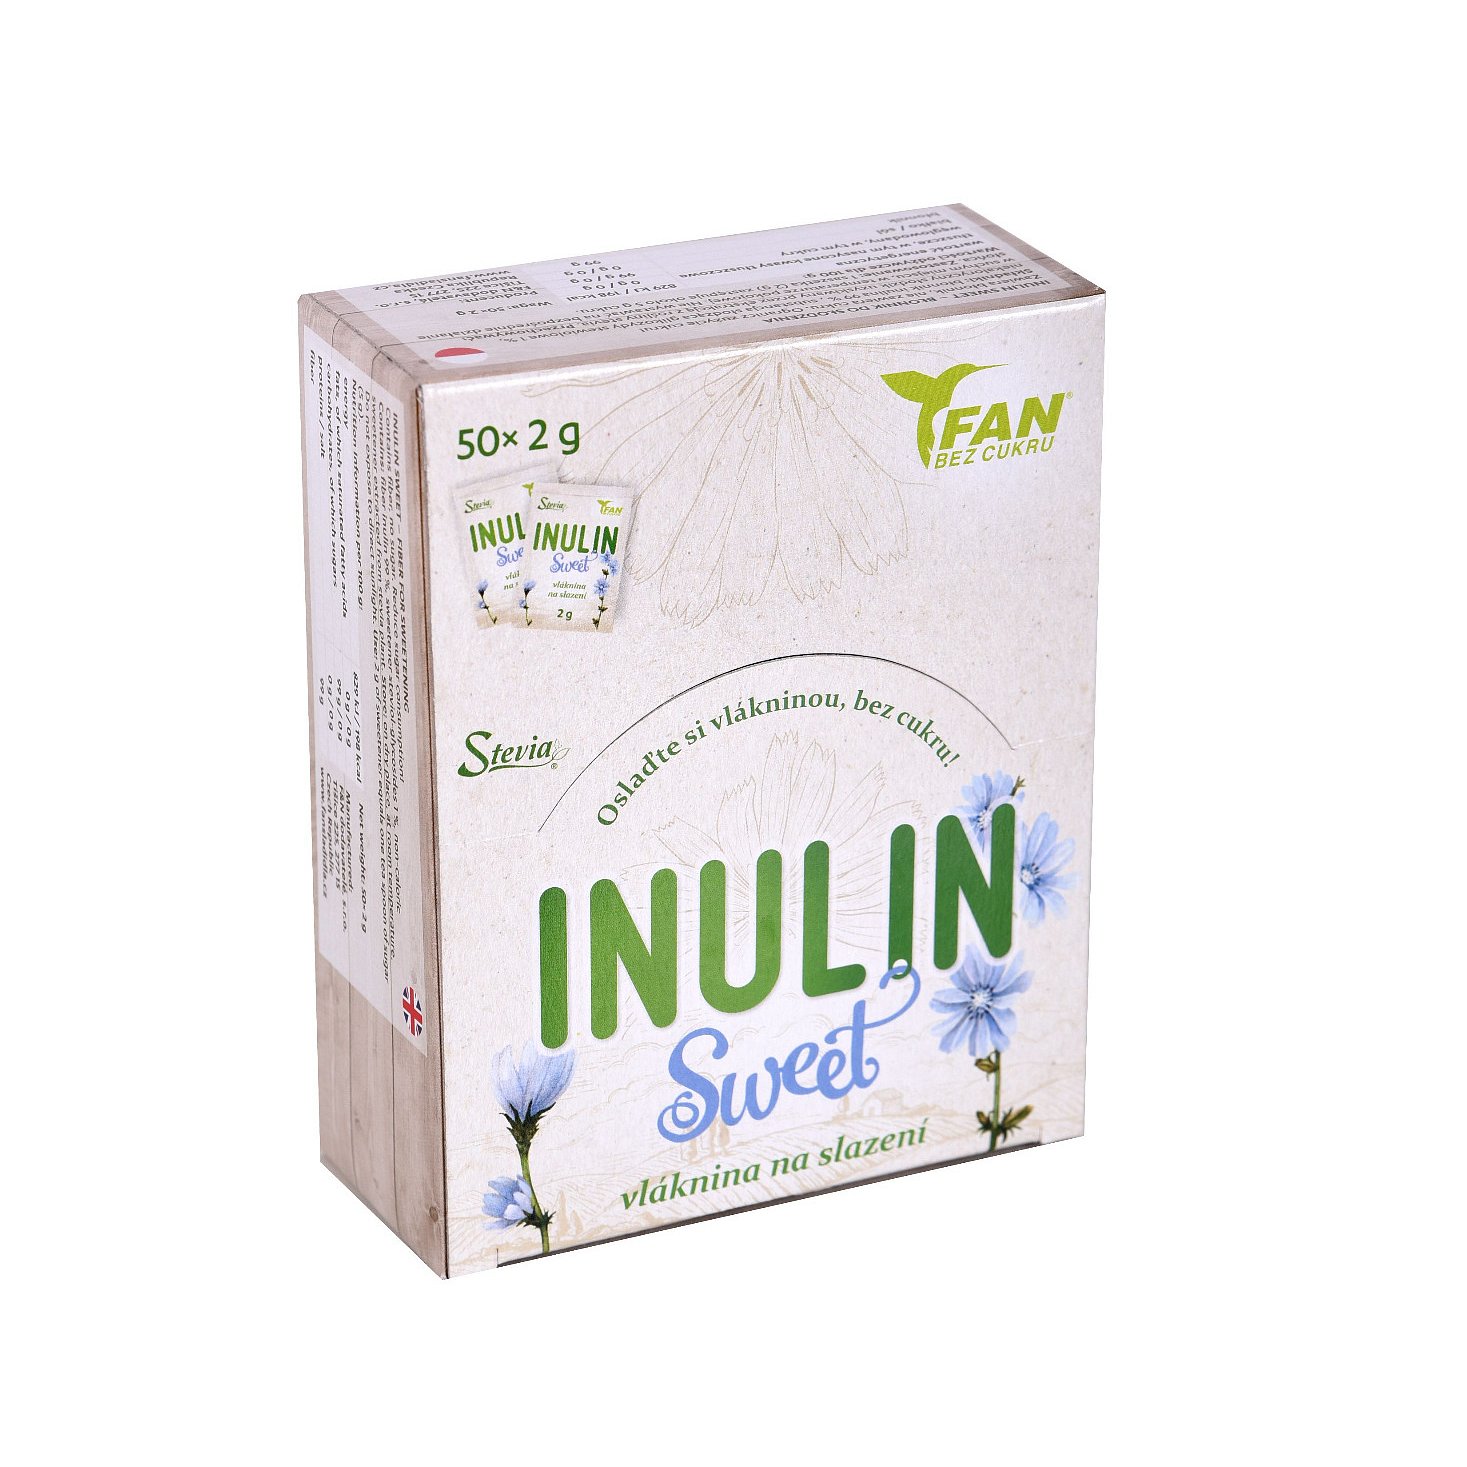 FAN Inulin Sweet vláknina na slazení 50x2 g